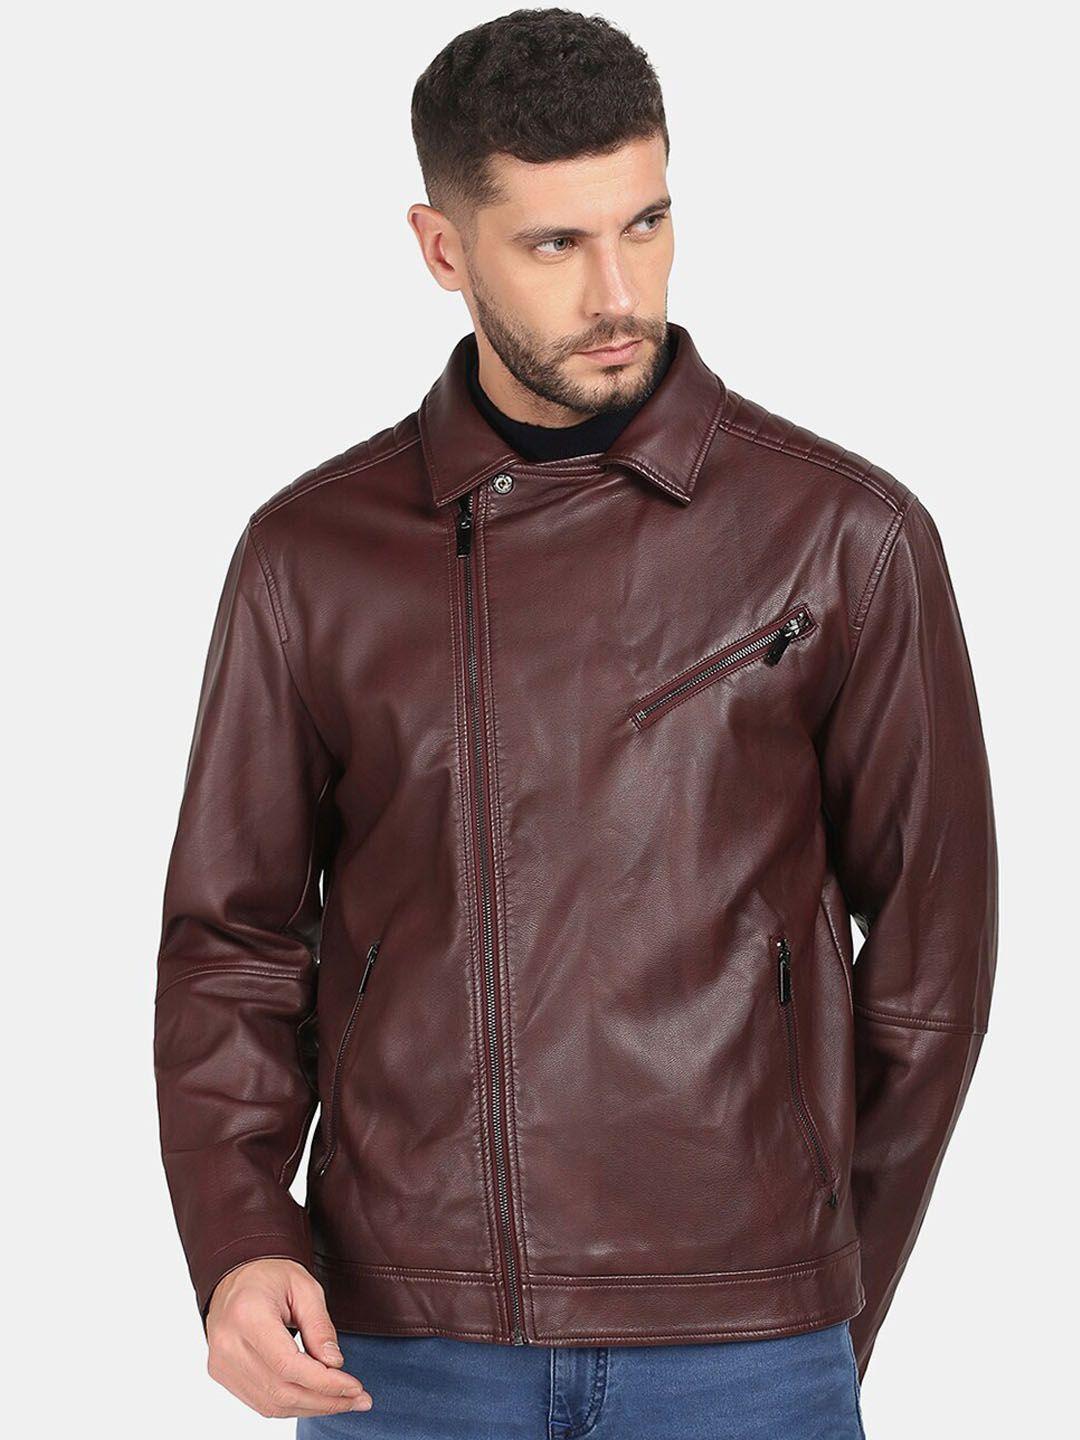 blackberrys-men-leather-biker-jacket